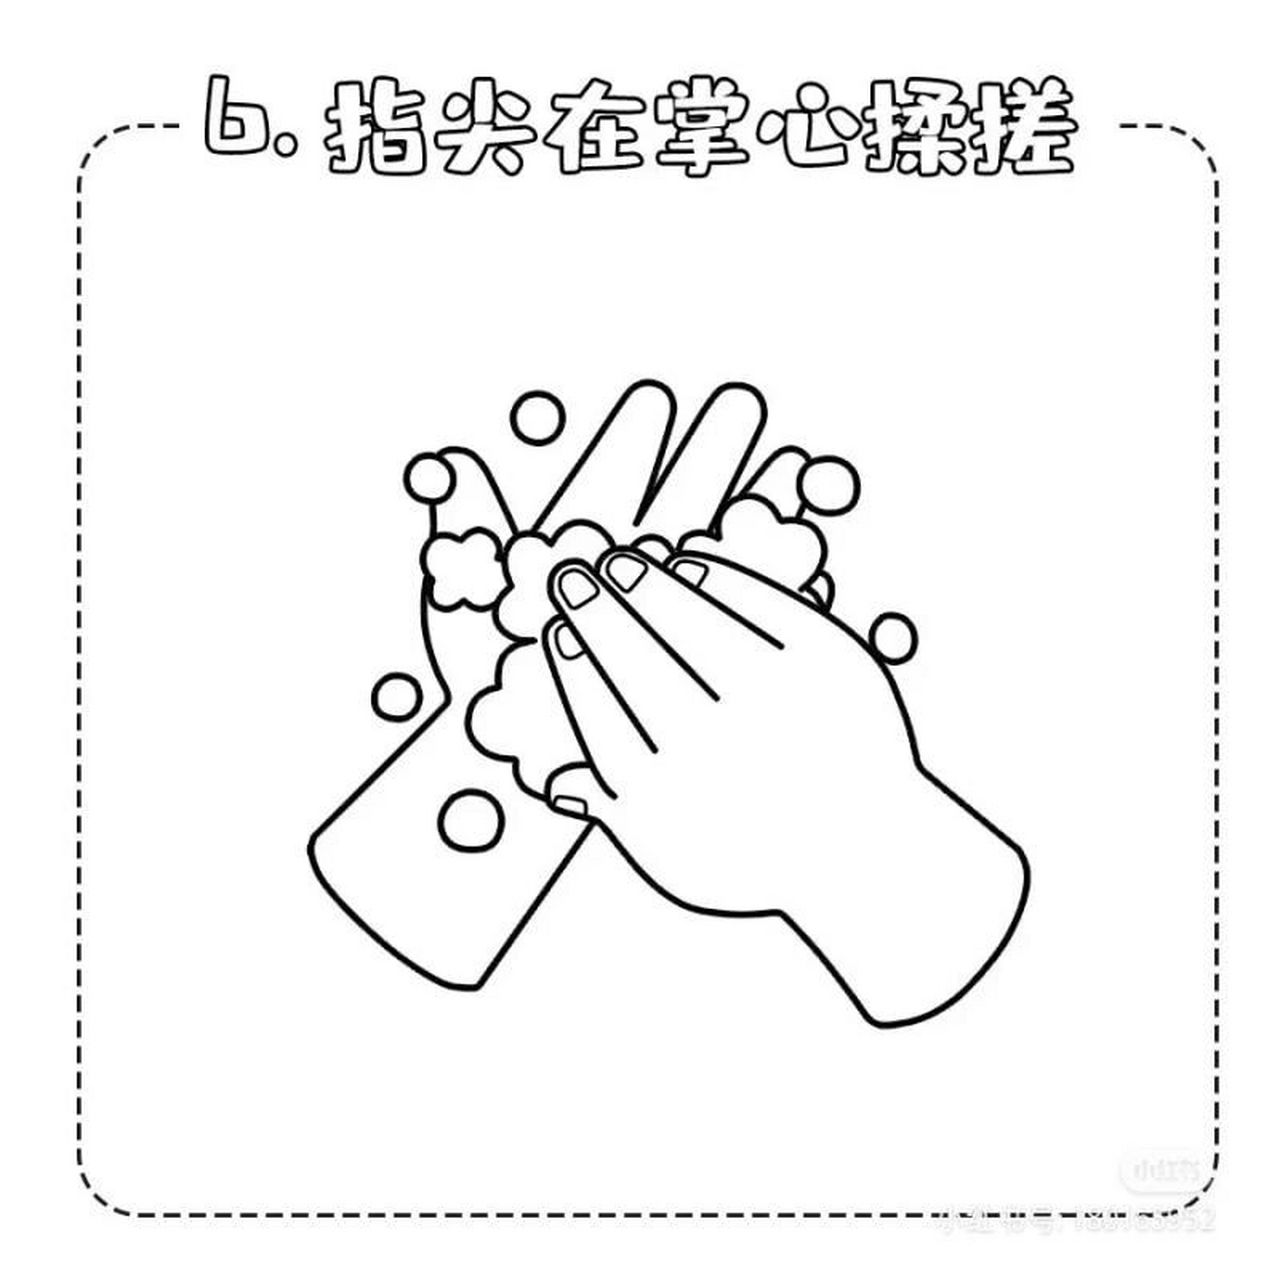 七步洗手法空白可涂色卡通图 疫情期间要记得正确洗手哦 